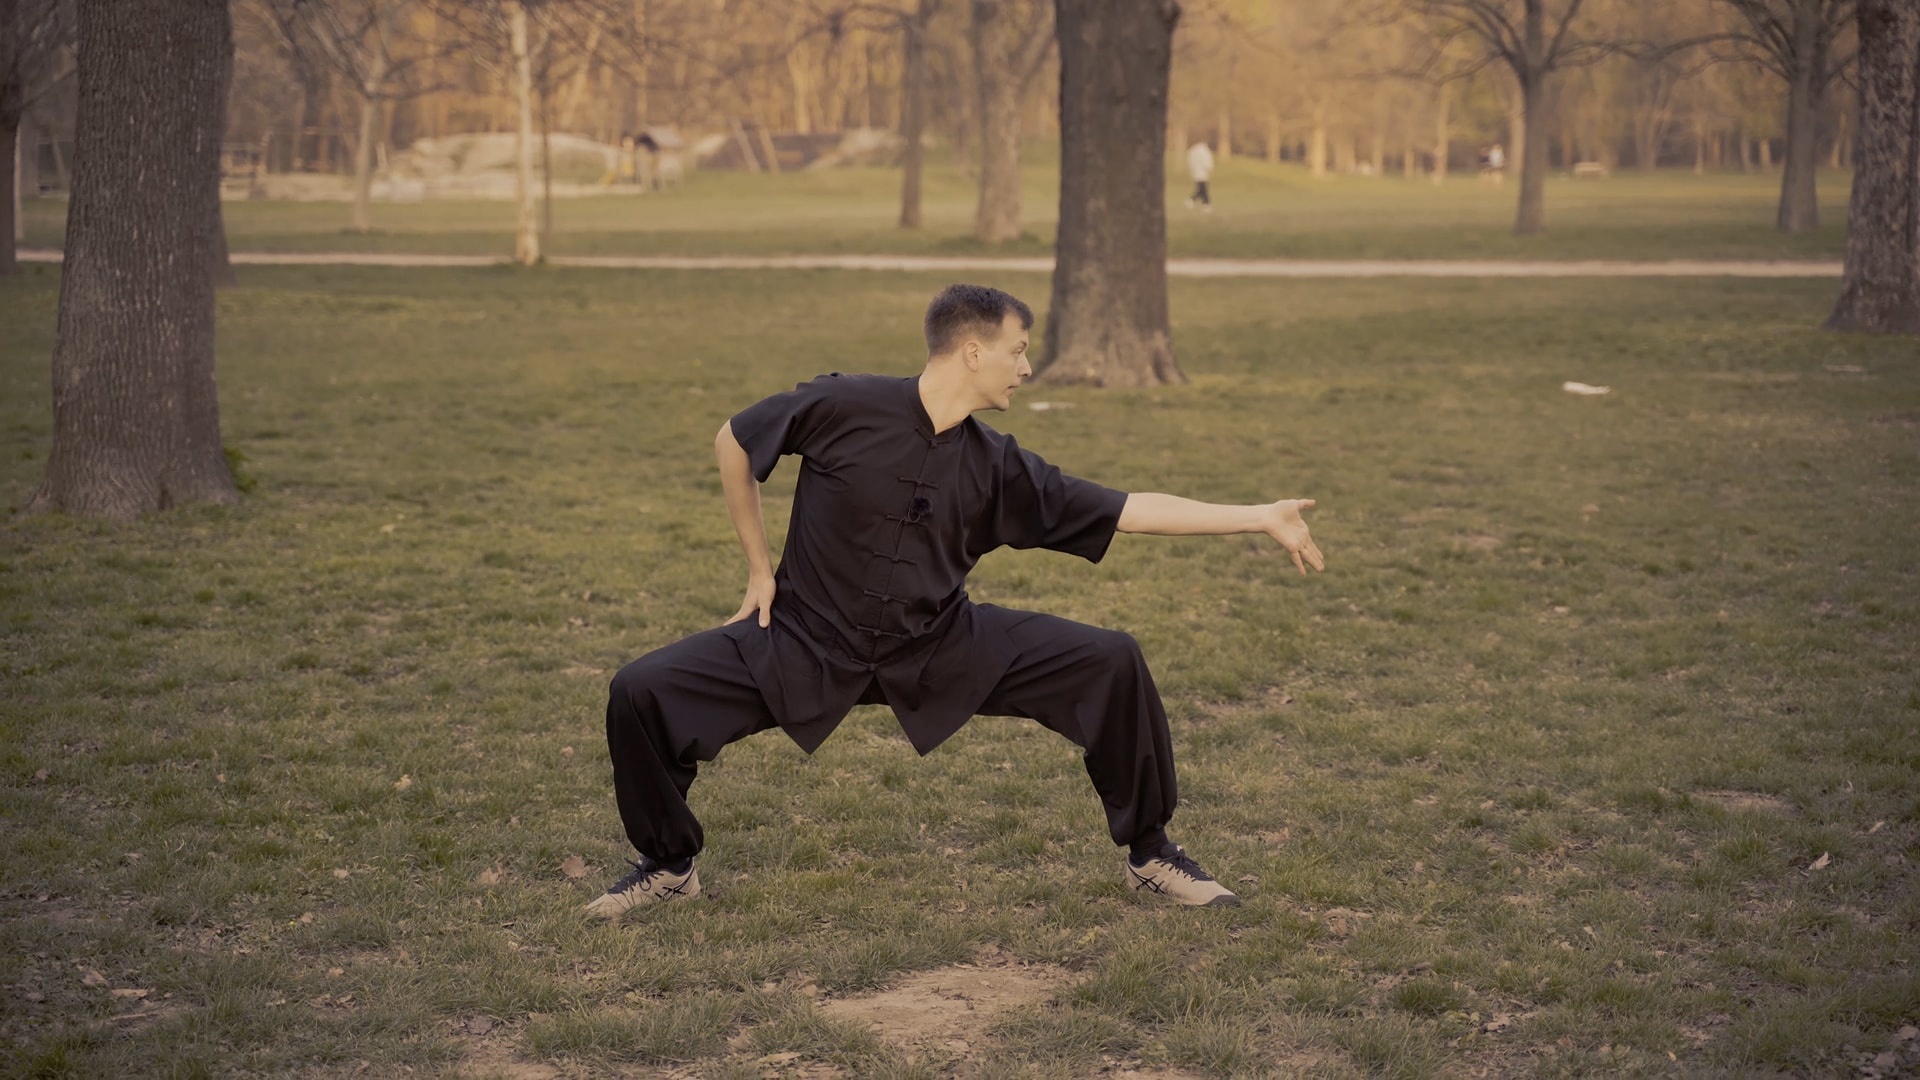 Bajiquan: Originally called bazi quan, Chinese martial art and combat sport discipline. 1920x1080 Full HD Wallpaper.